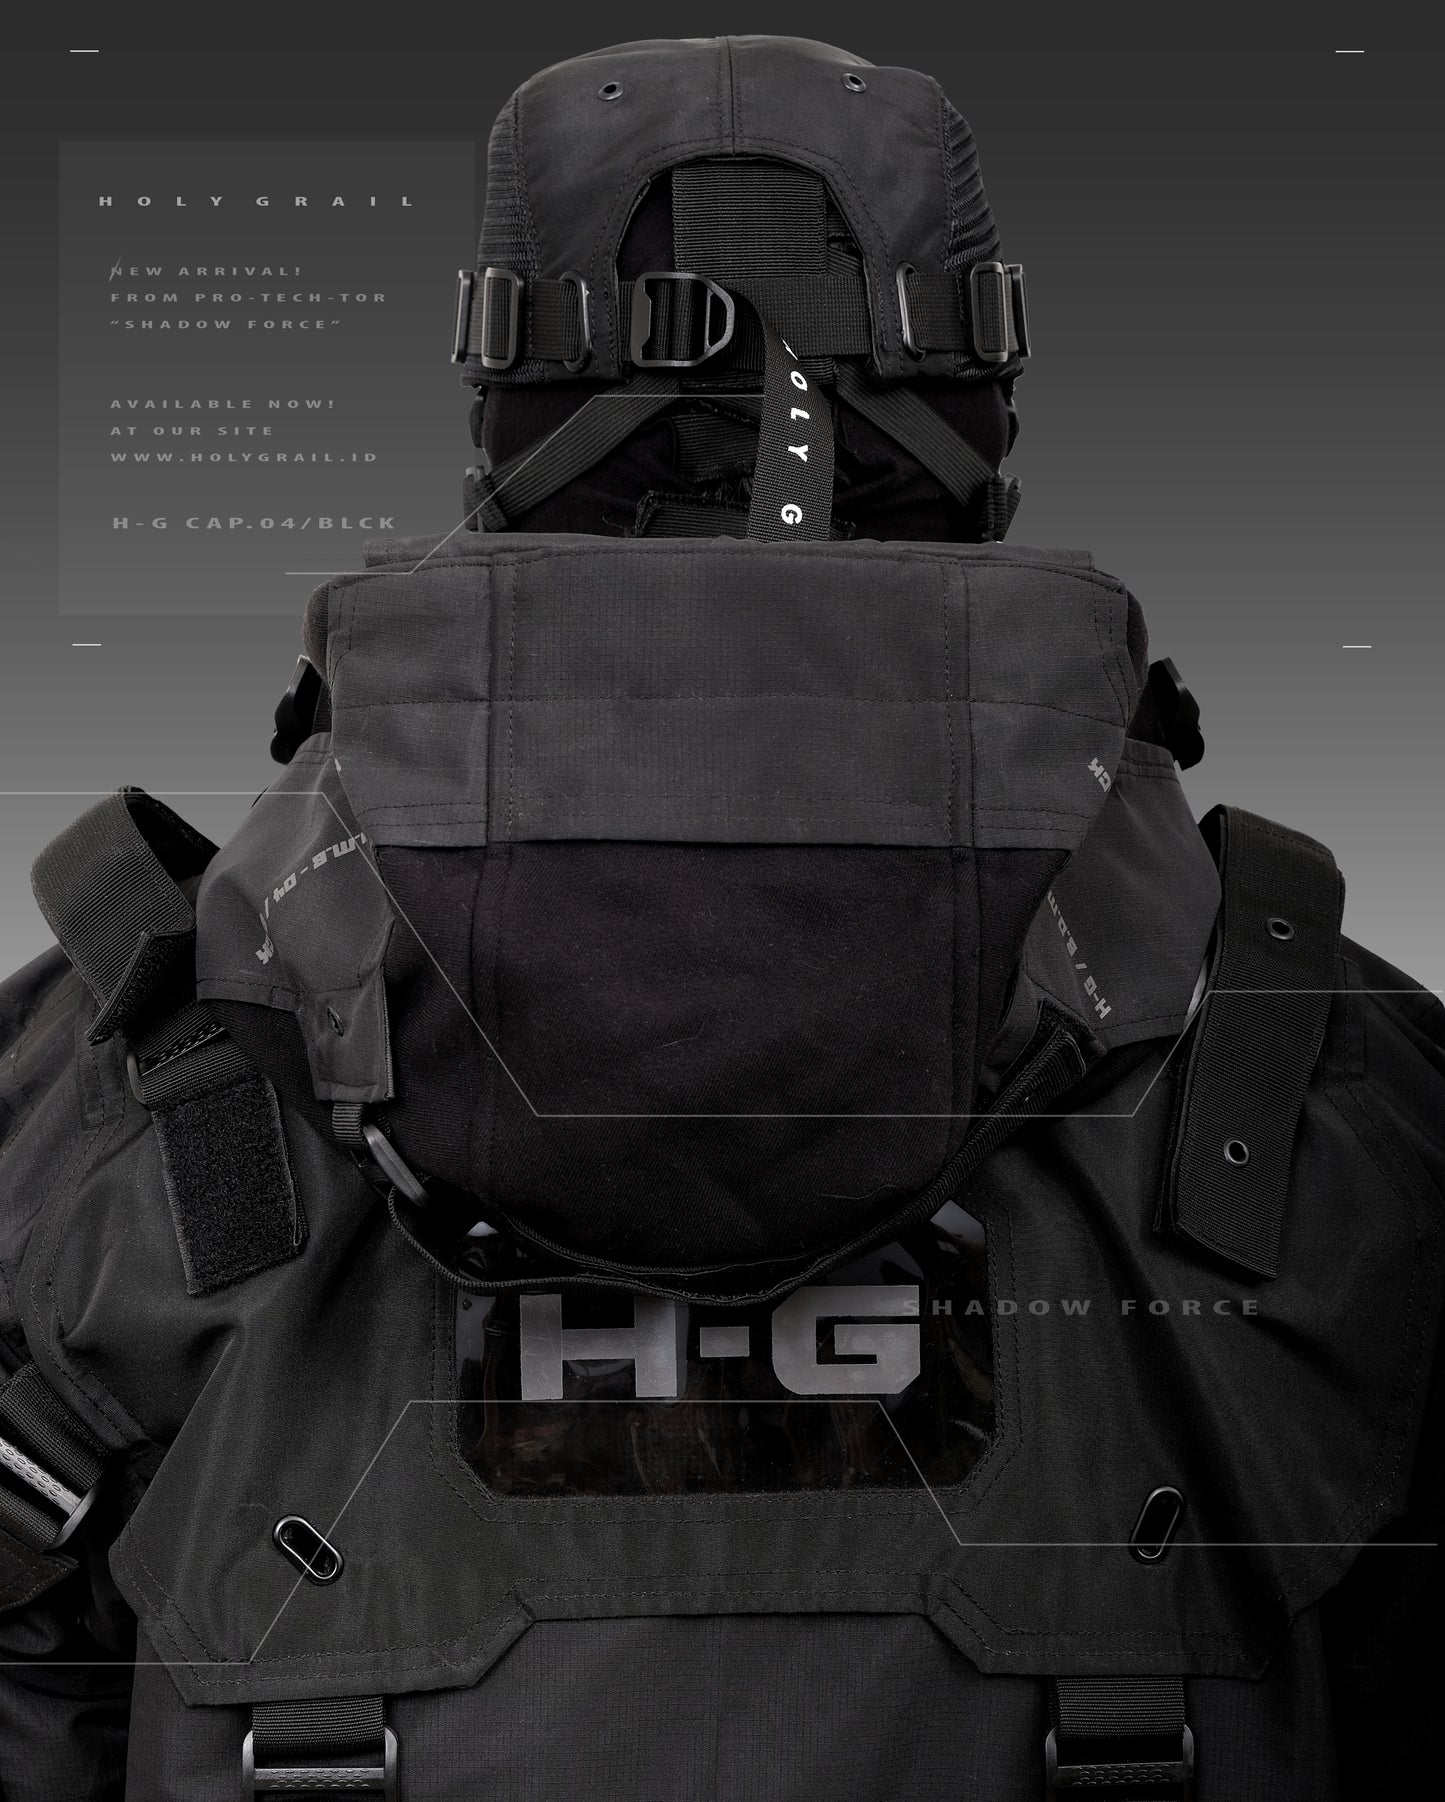 H-G CAP 04/BLCK